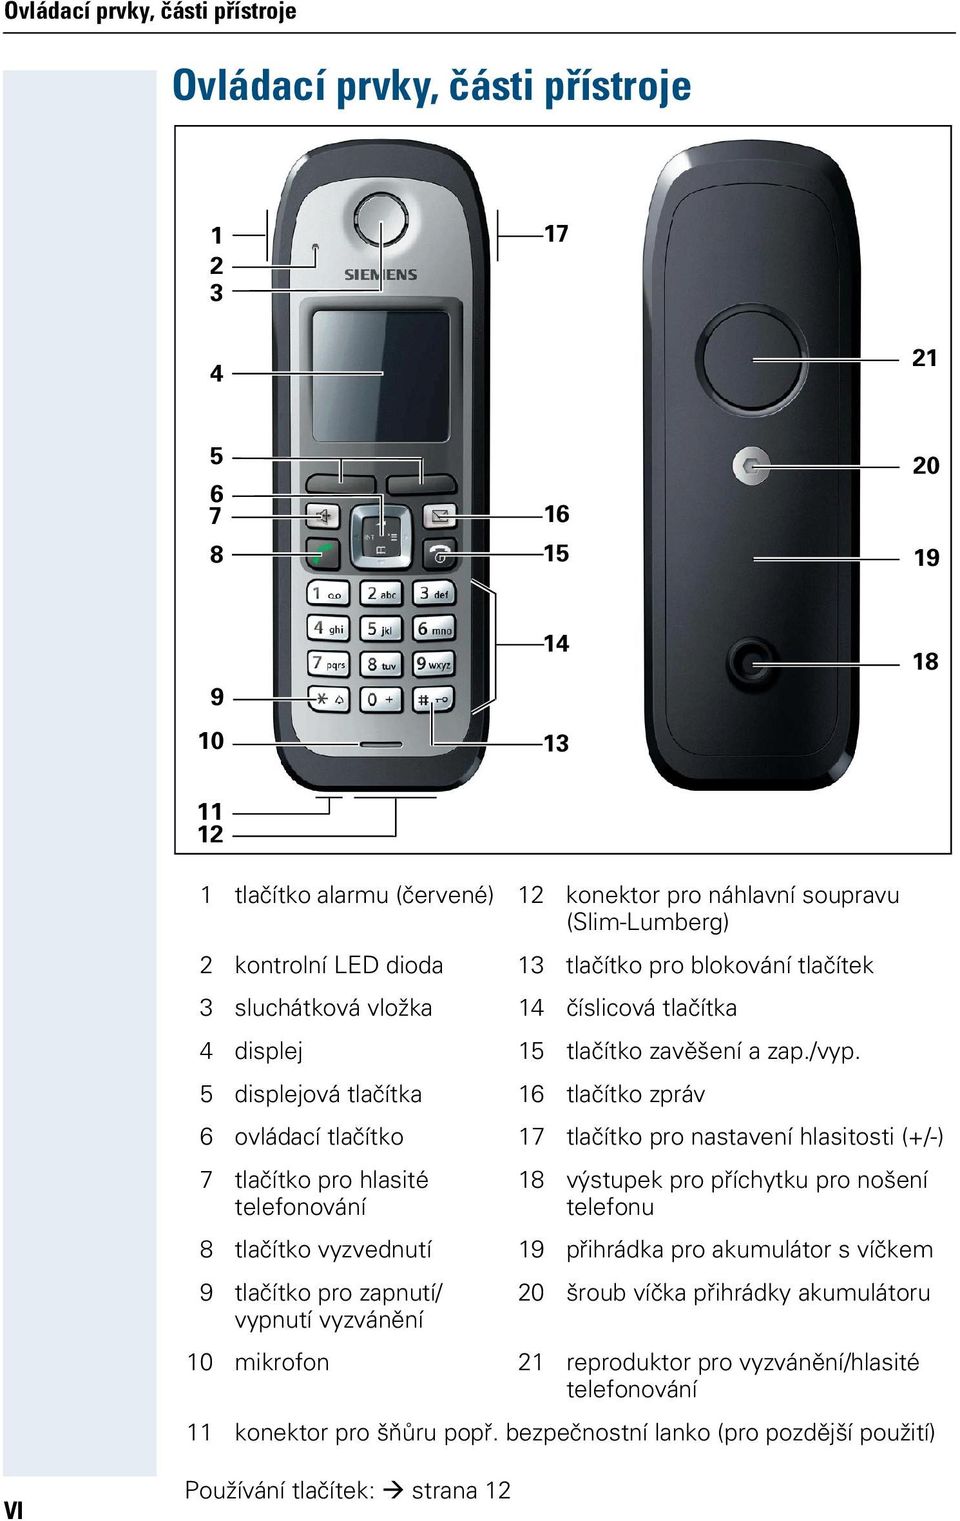 5 displejová tlačítka 16 tlačítko zpráv 6 ovládací tlačítko 17 tlačítko pro nastavení hlasitosti (+/-) 7 tlačítko pro hlasité telefonování 18 výstupek pro příchytku pro nošení telefonu 8 tlačítko